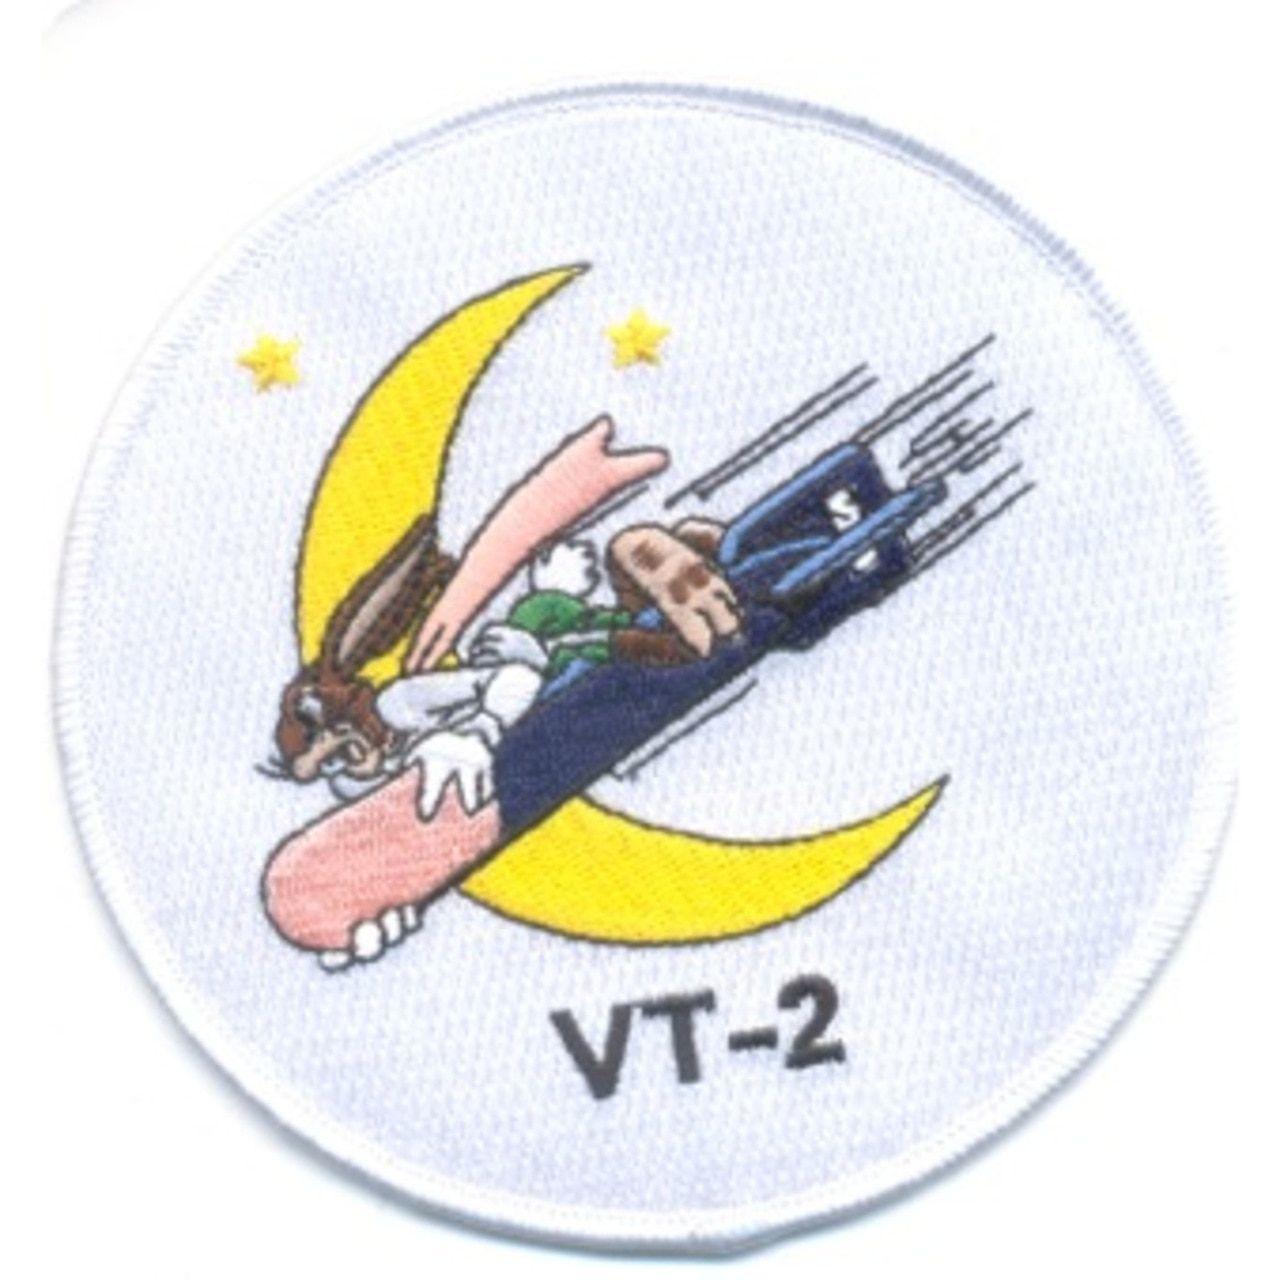 Vt-2 Logo - VT 2 Torpedo Squadron Patch